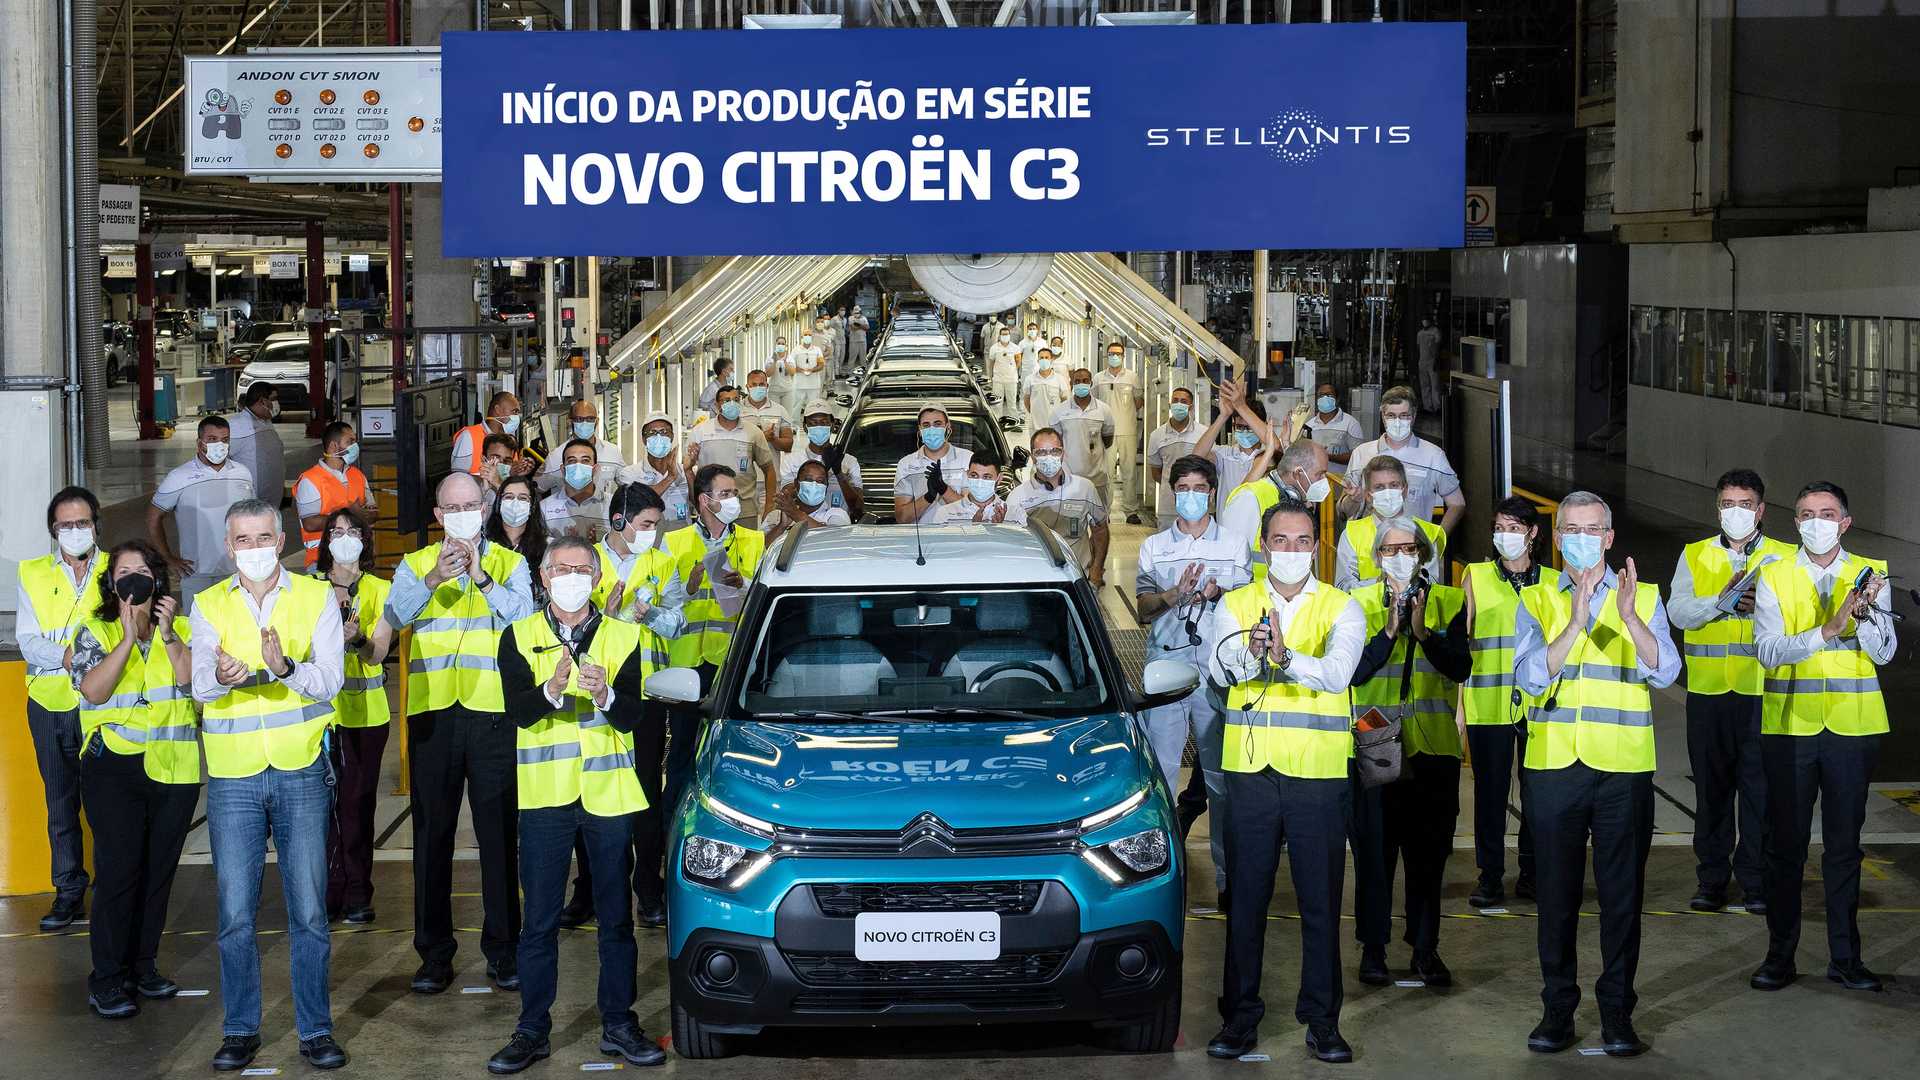 Citroen C3 Inicio Da Producao Em Porto Real Rj (1)